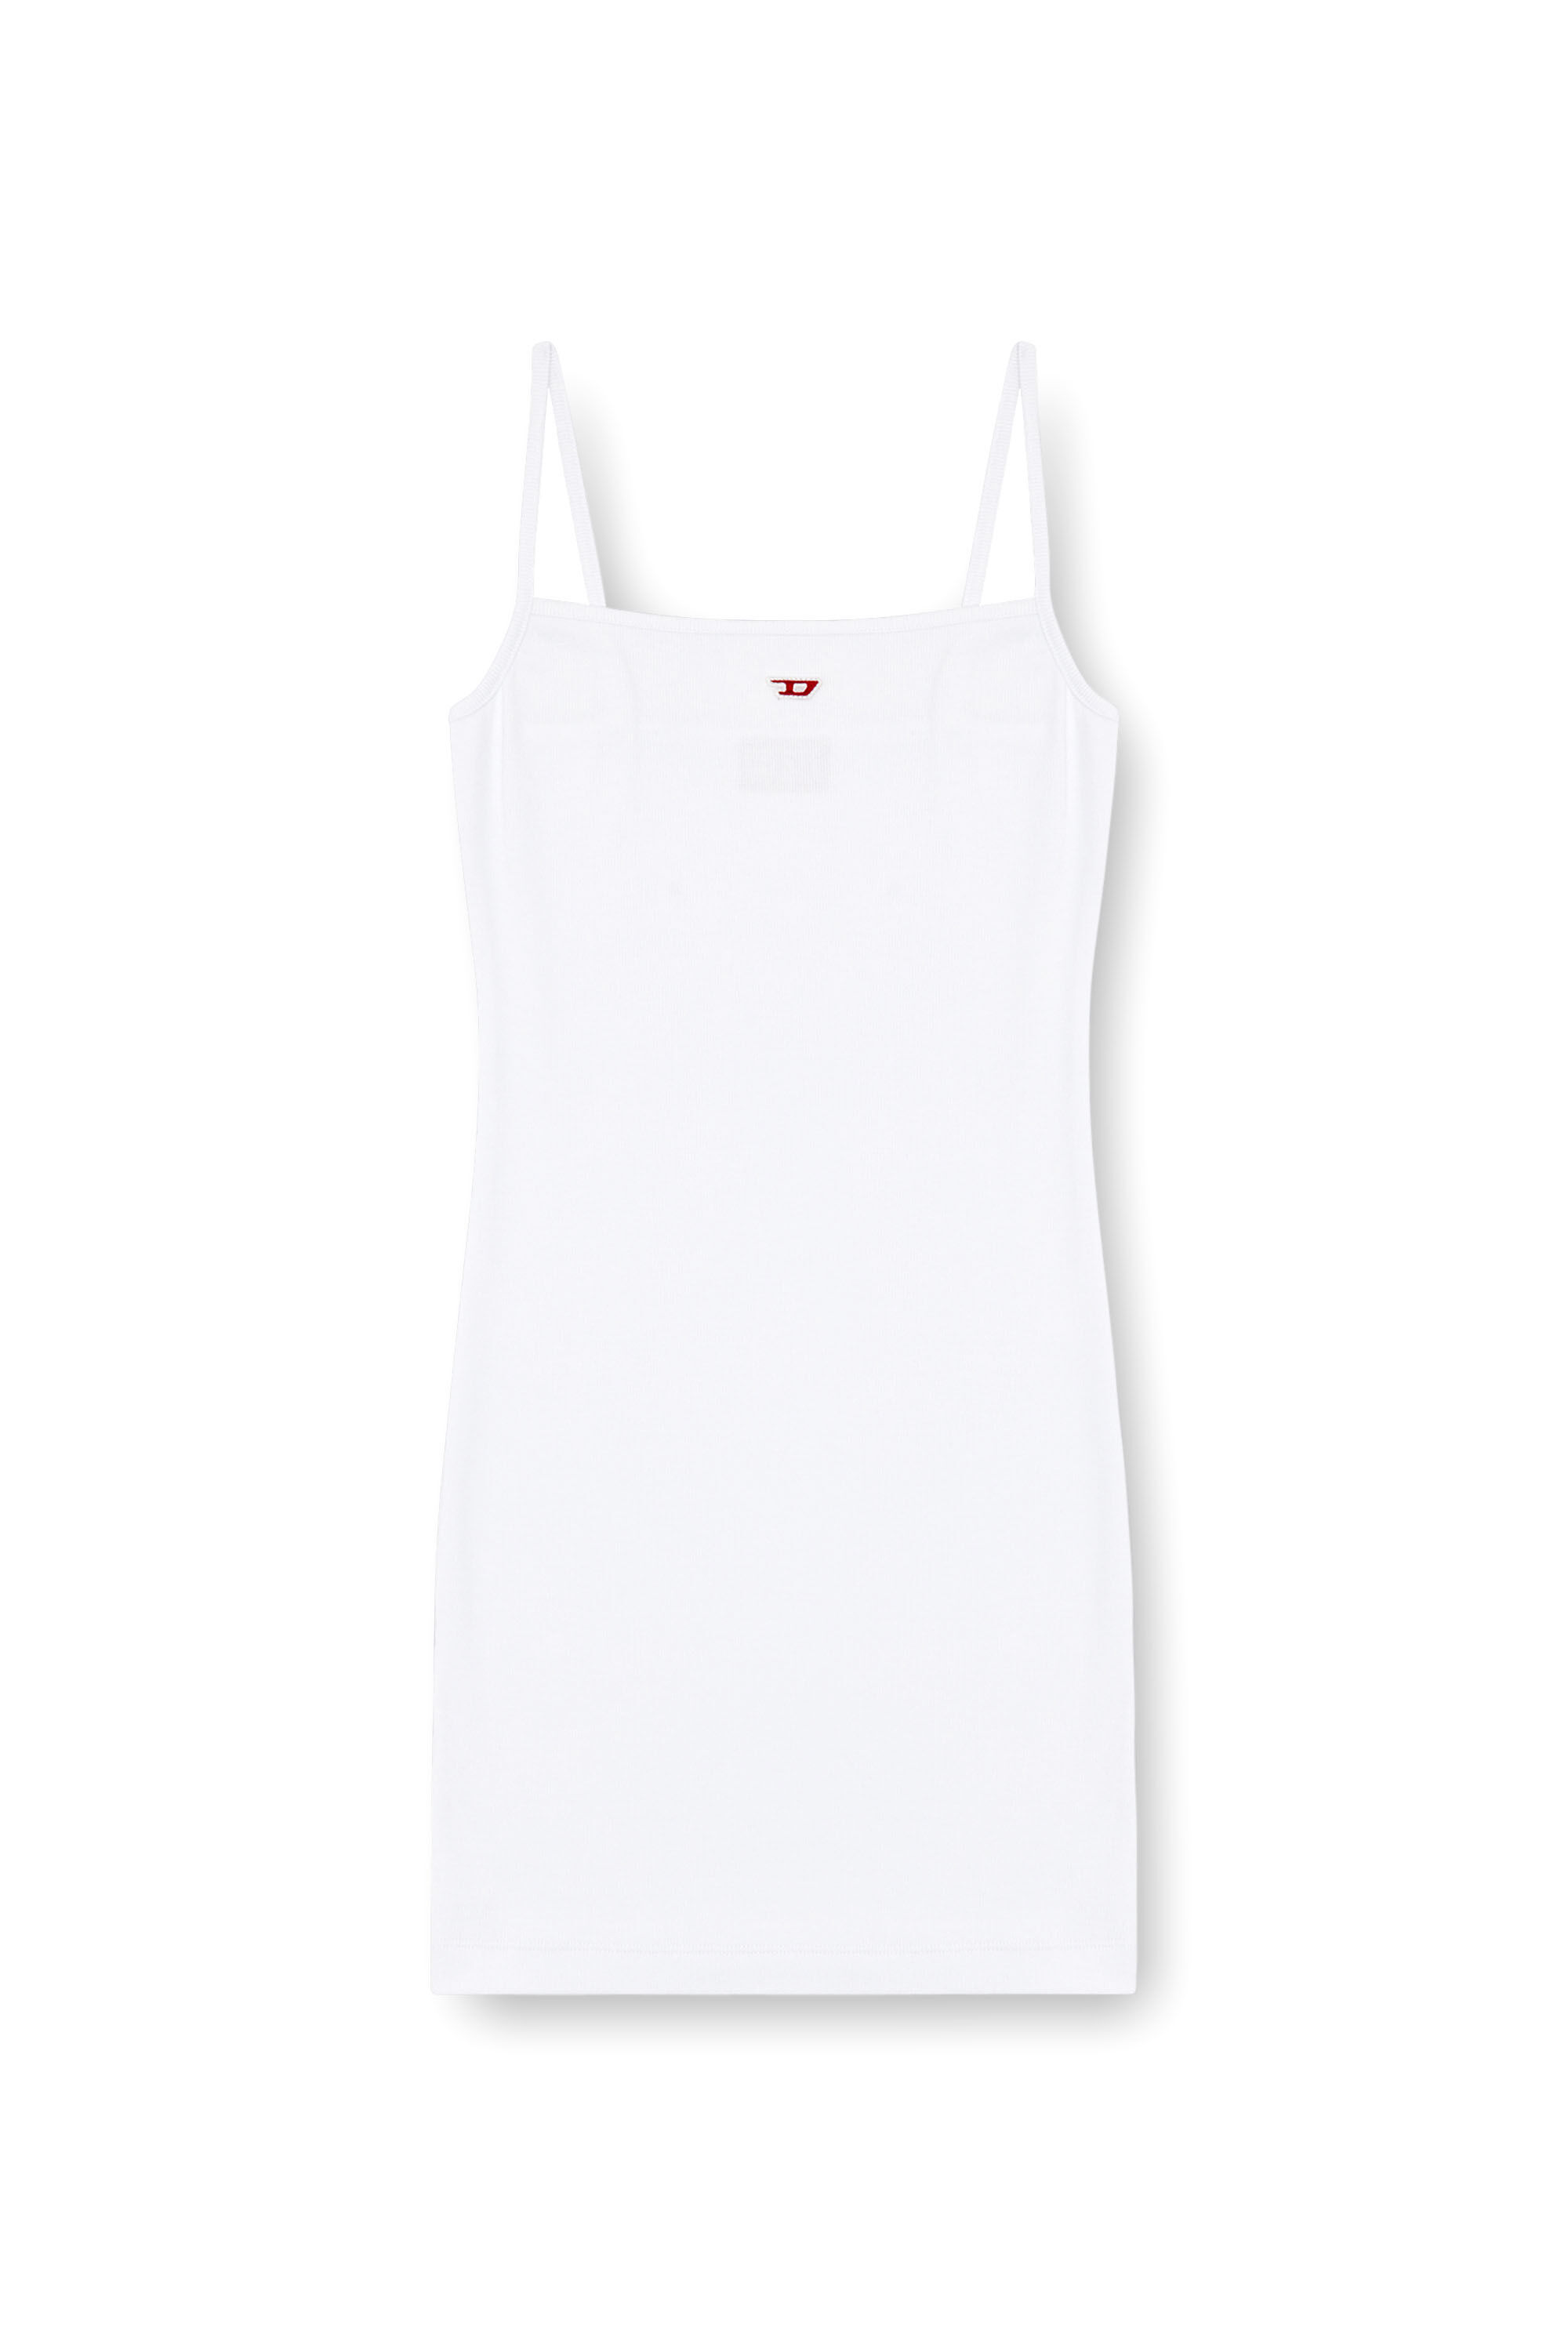 Diesel - D-HOPY-D, Female Short slip dress with D logo in ホワイト - Image 2